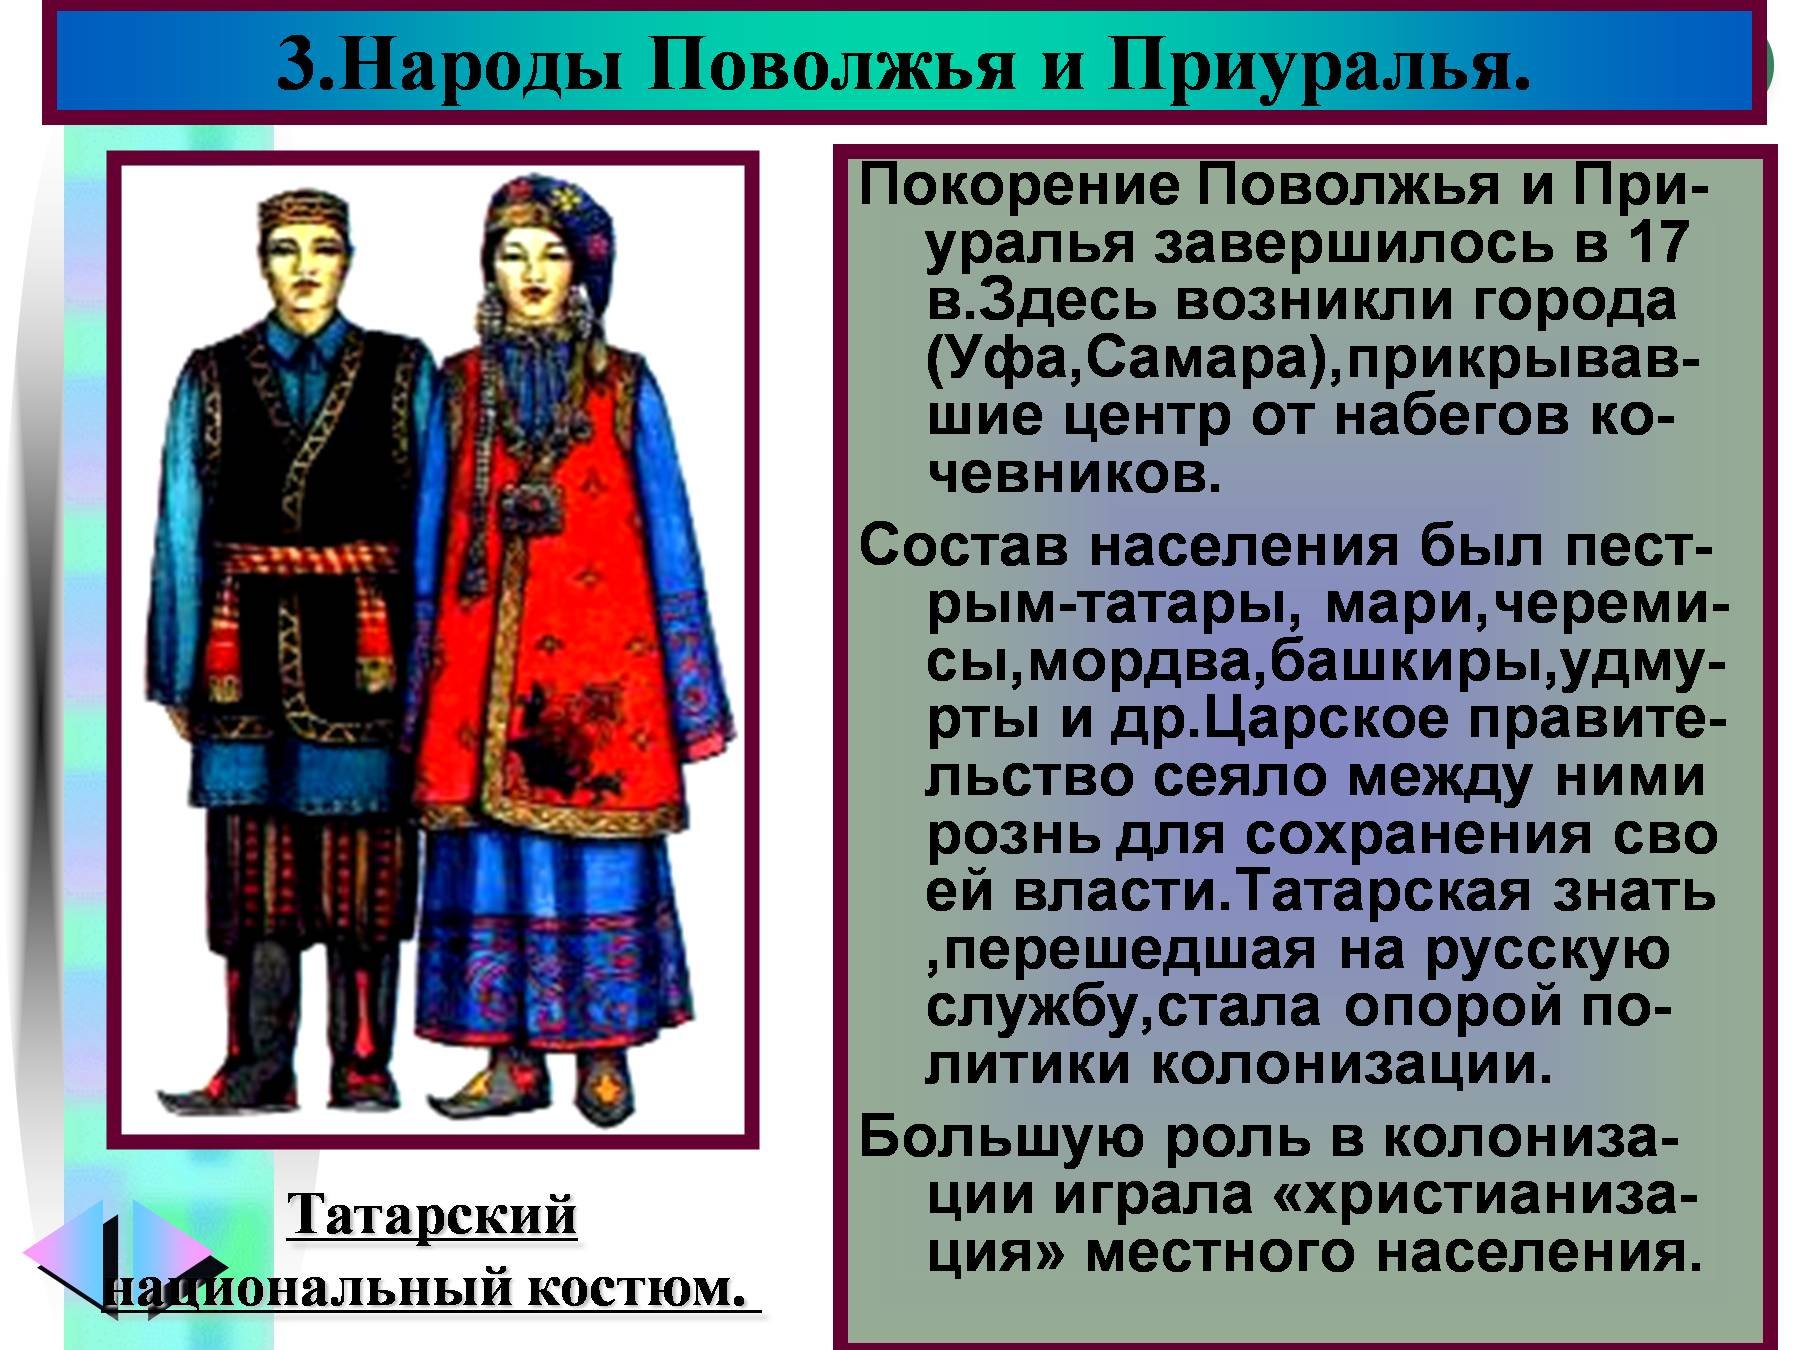 Народы Поволжья и Приуралья России 17 века